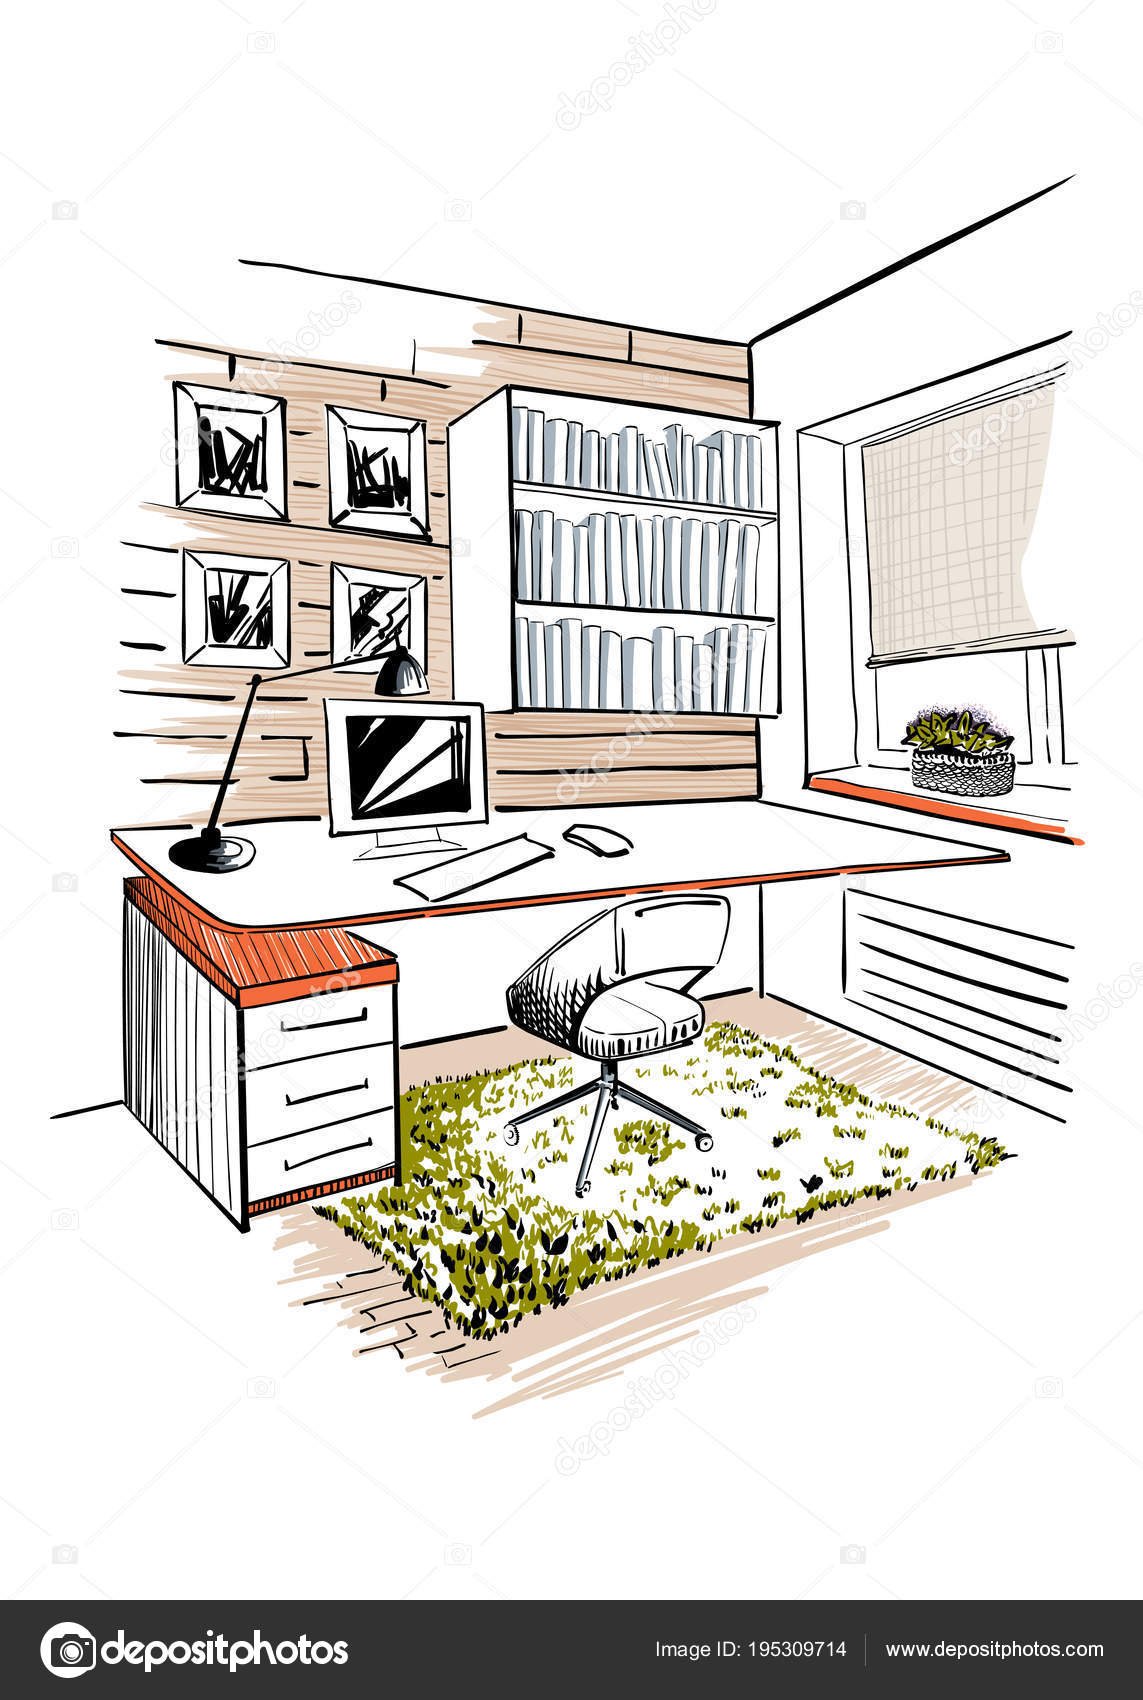 Sketch interior design comfortable workplace Vector Image